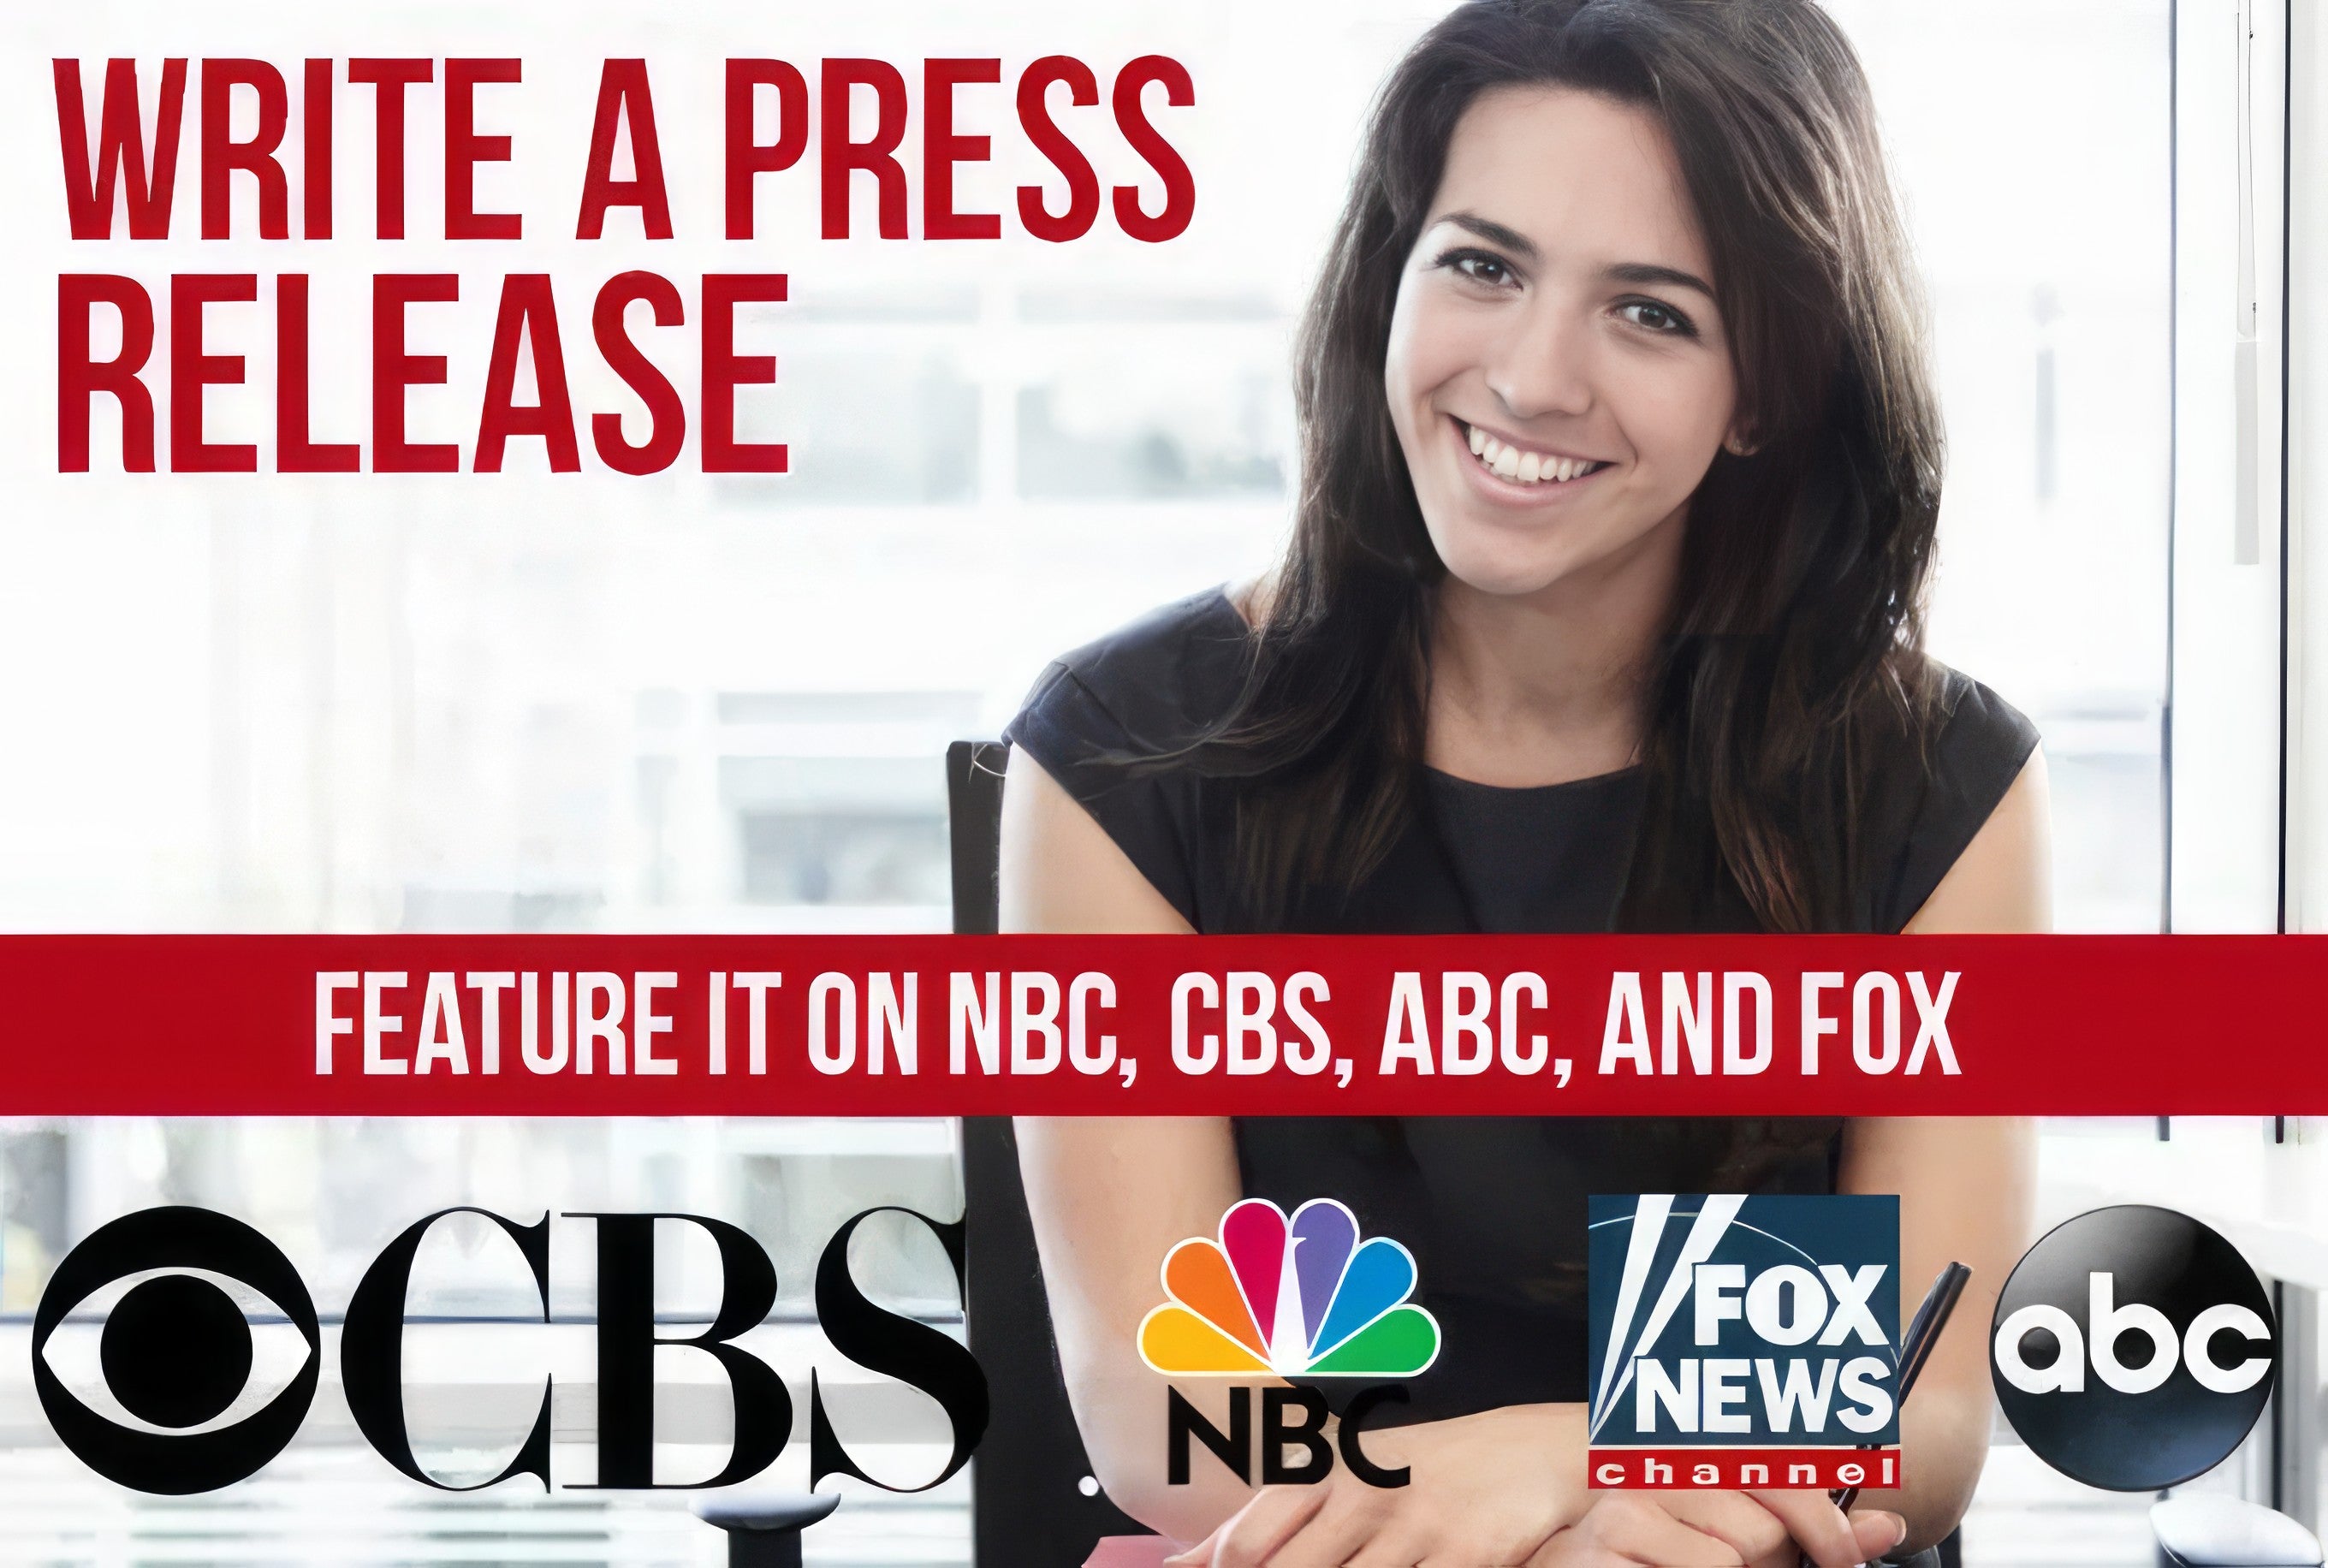 Google समाचार, सीबीएस, फॉक्स, एबीसी, 500+ समाचारों के लिए प्रेस विज्ञप्ति सबमिट करें